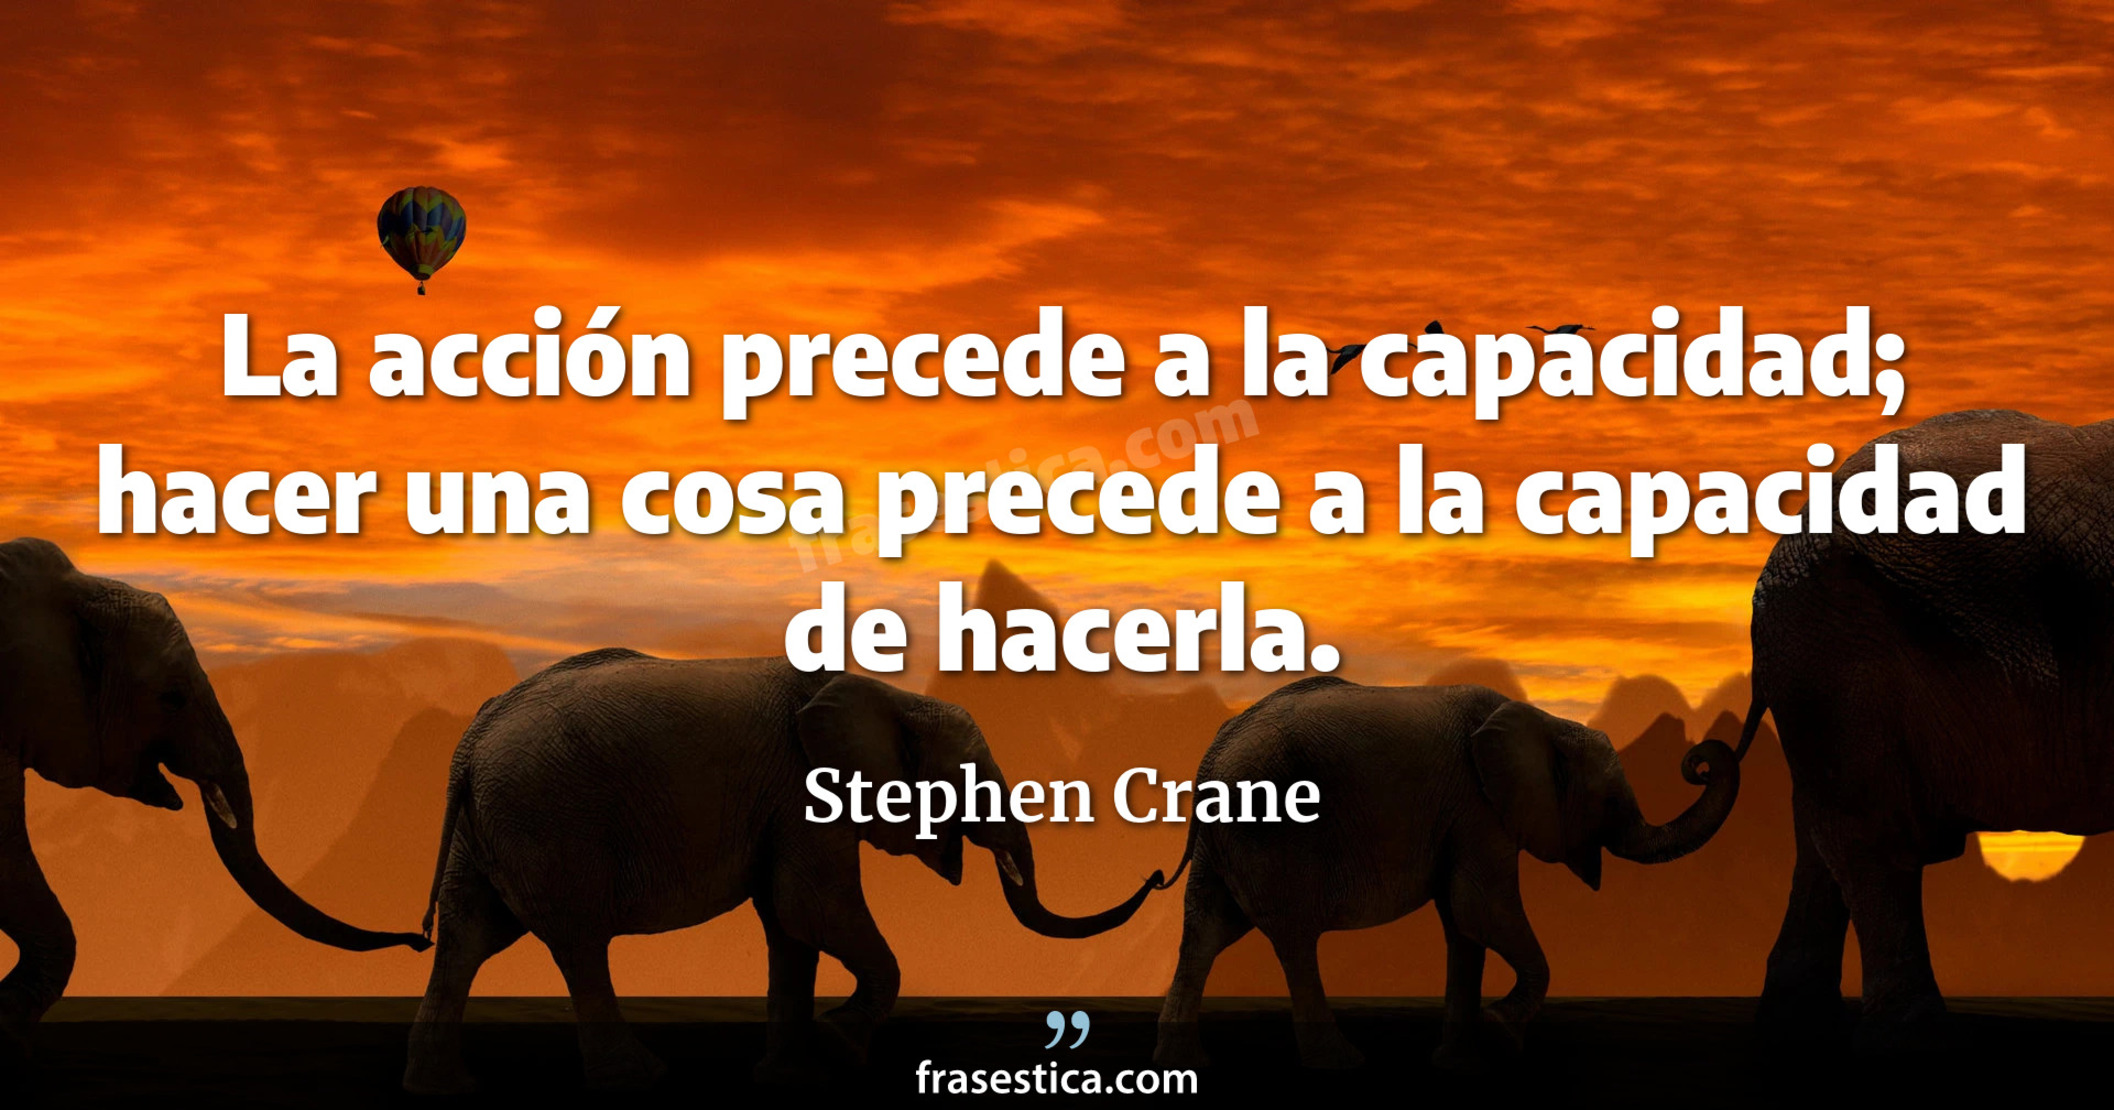 La acción precede a la capacidad; hacer una cosa precede a la capacidad de hacerla. - Stephen Crane